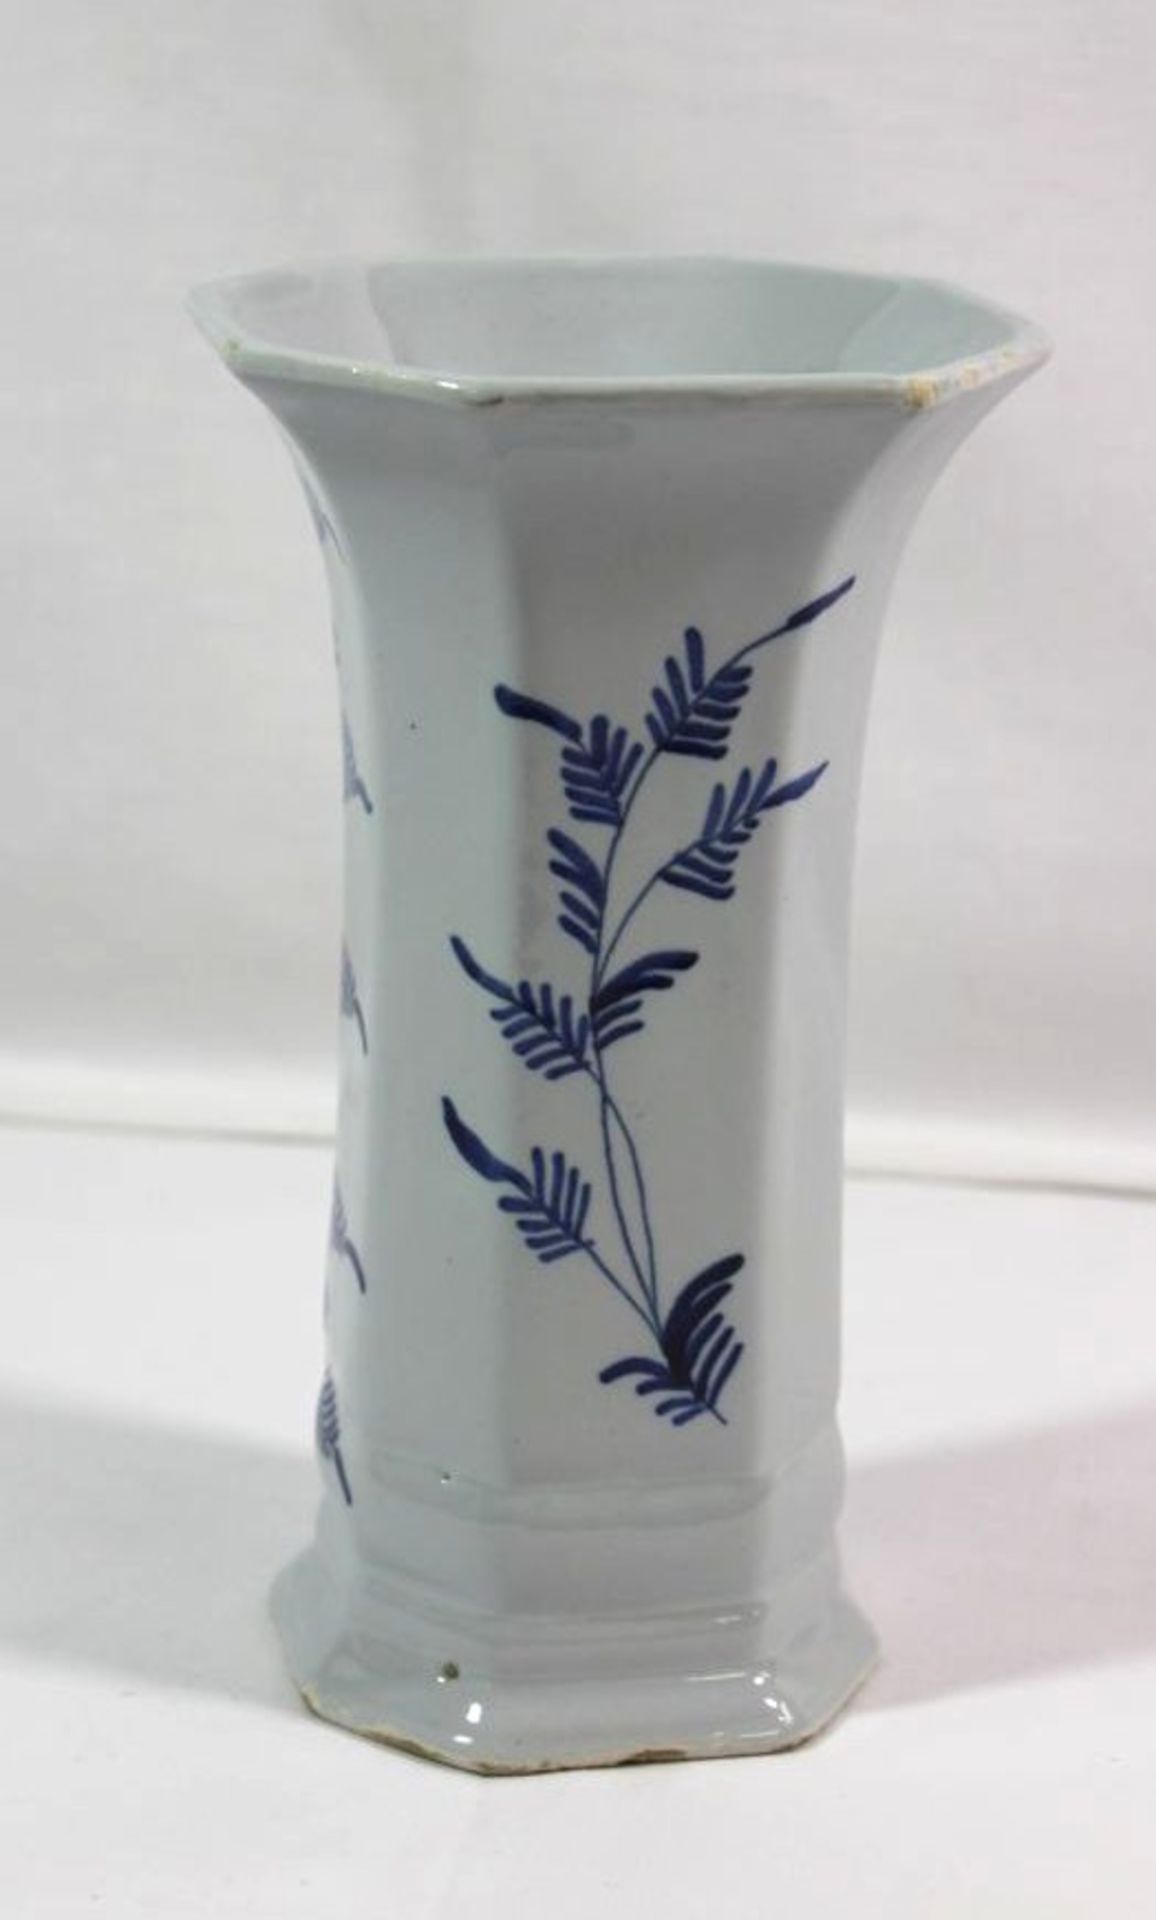 Vase, Blaumalerei, wohl Niederlande, Malerzeichen, div. kl. Glasurabplatzer, H-20cm. - Bild 2 aus 3